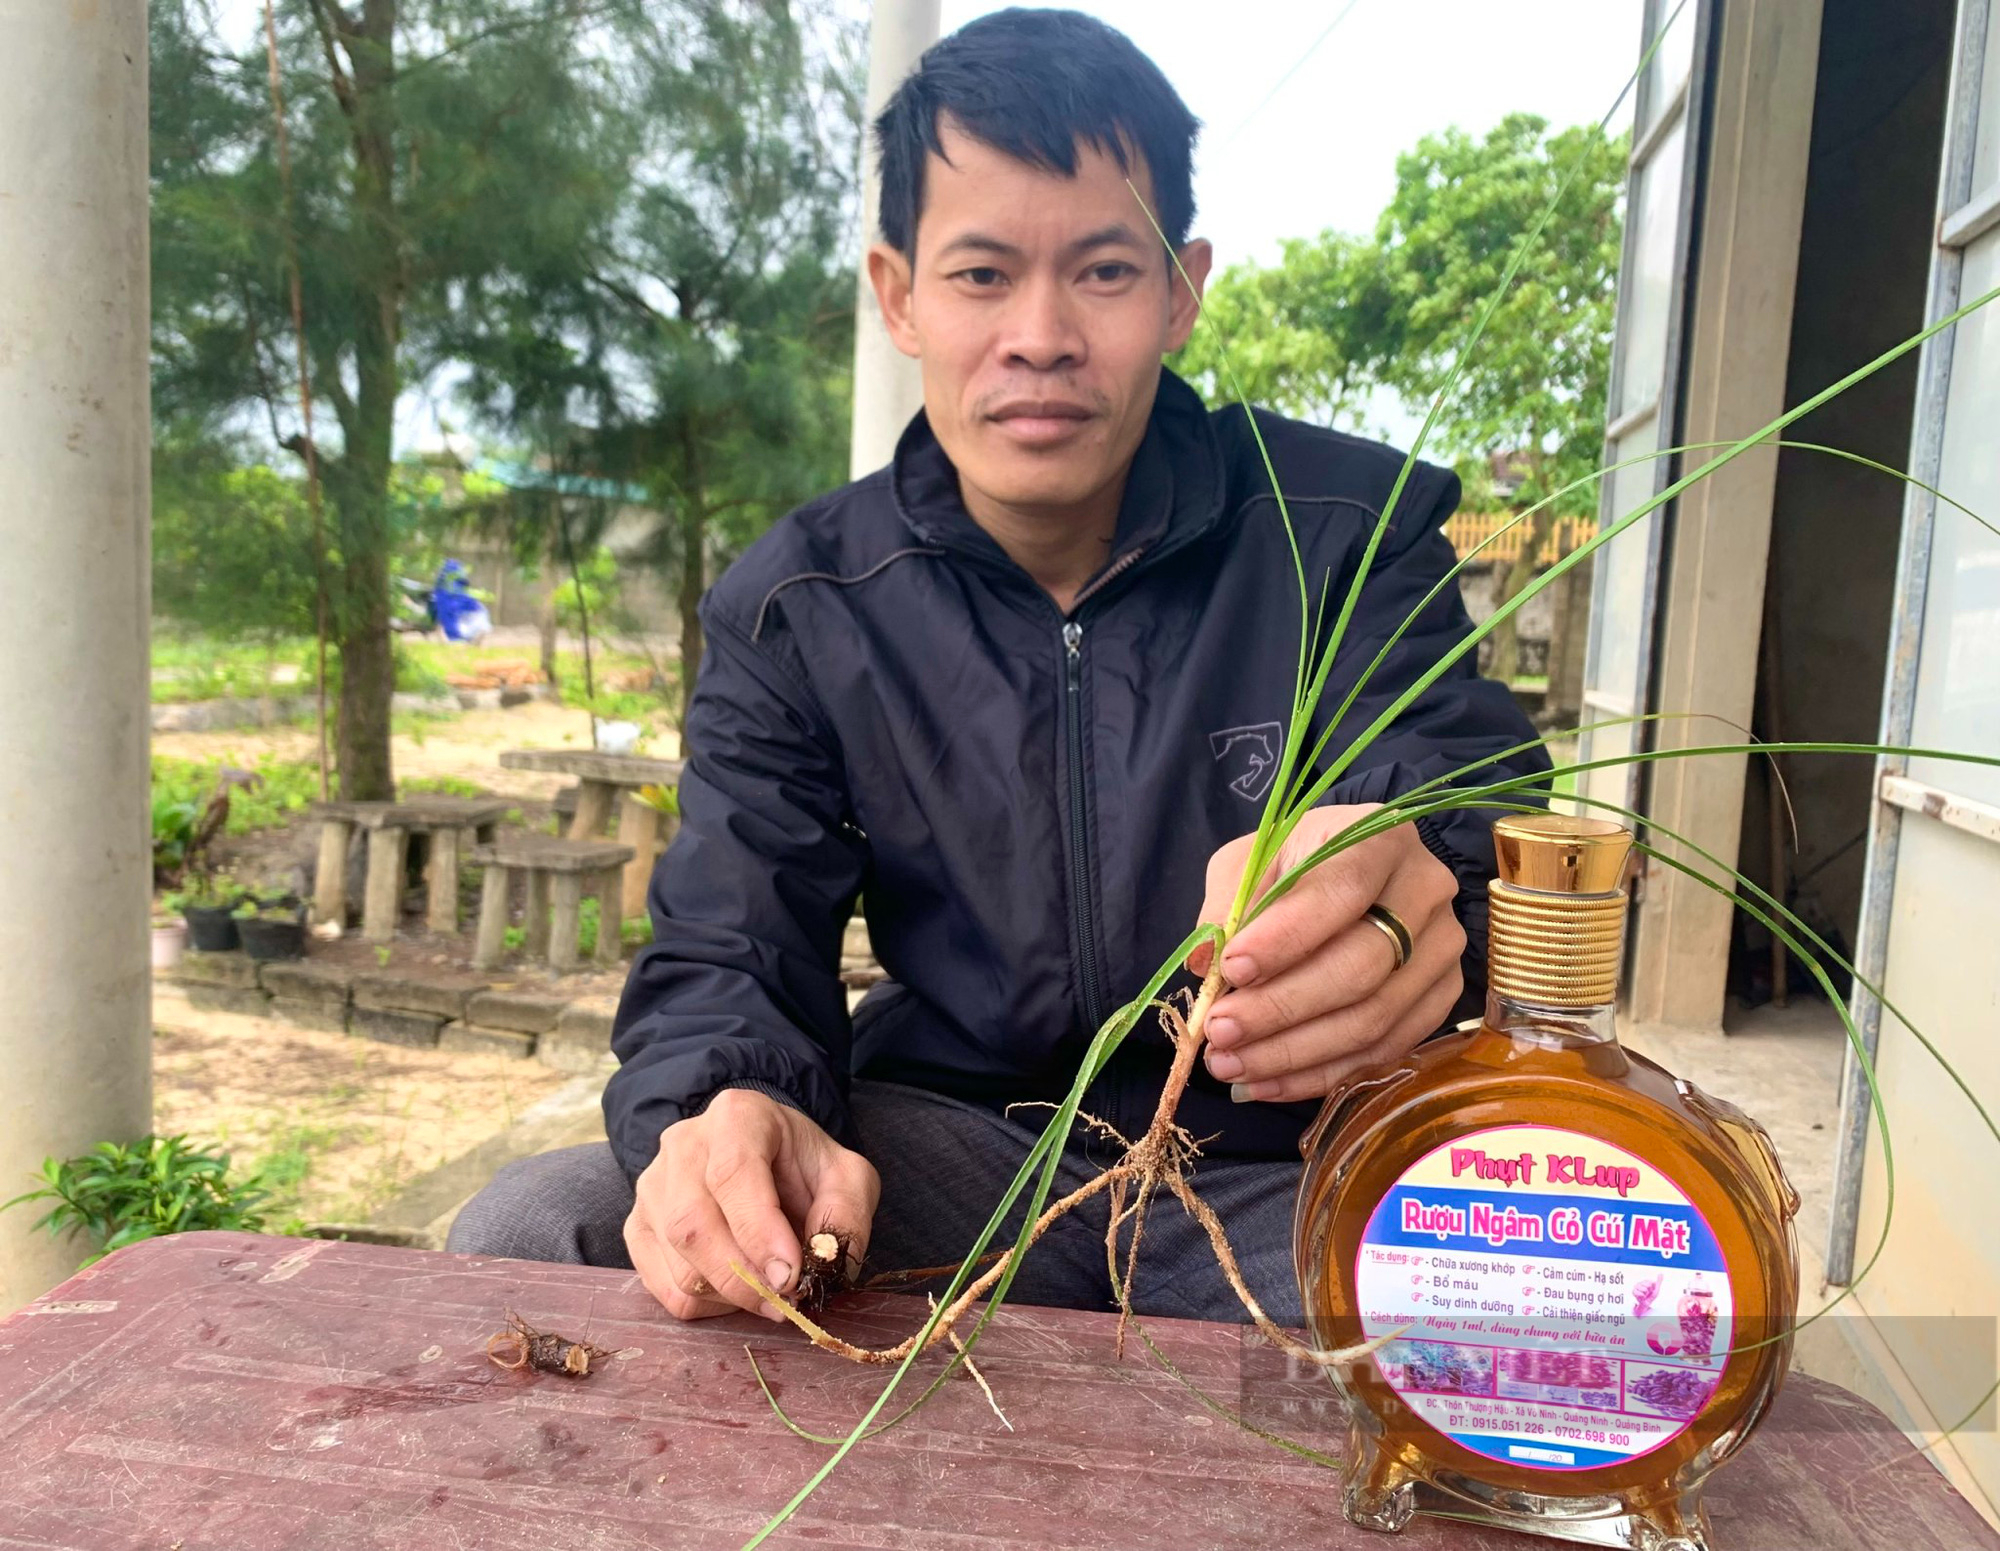 Quảng Bình: Chàng trai khuyết tật khấm khá nhờ trồng cỏ dại khiến cả làng ngỡ ngàng - Ảnh 5.